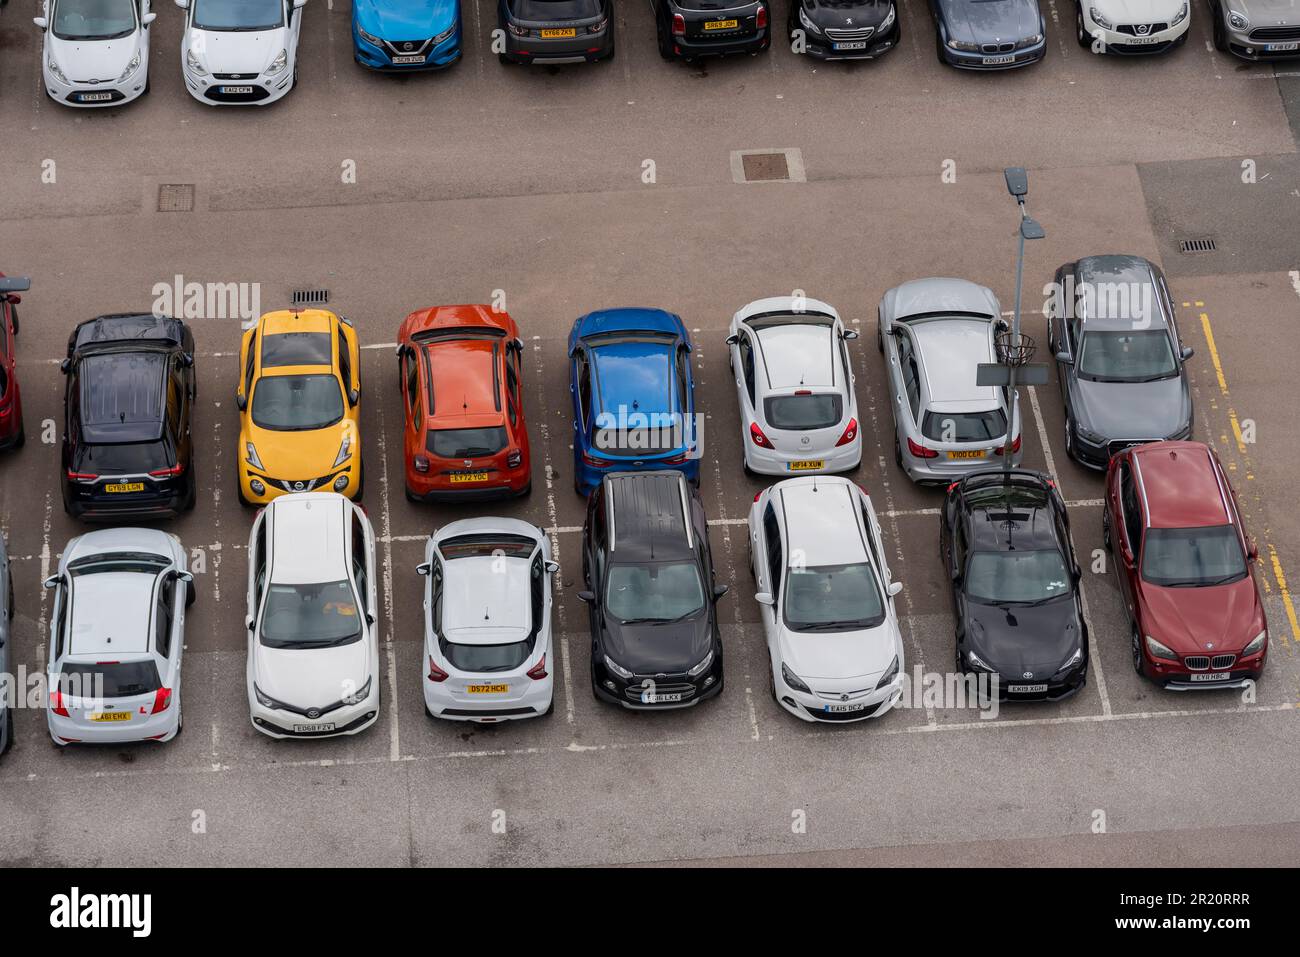 Voitures garées dans un parking, vue d'en haut. Des places de parking sont indiquées, toutes prises par une voiture garée. Parkings complets Banque D'Images